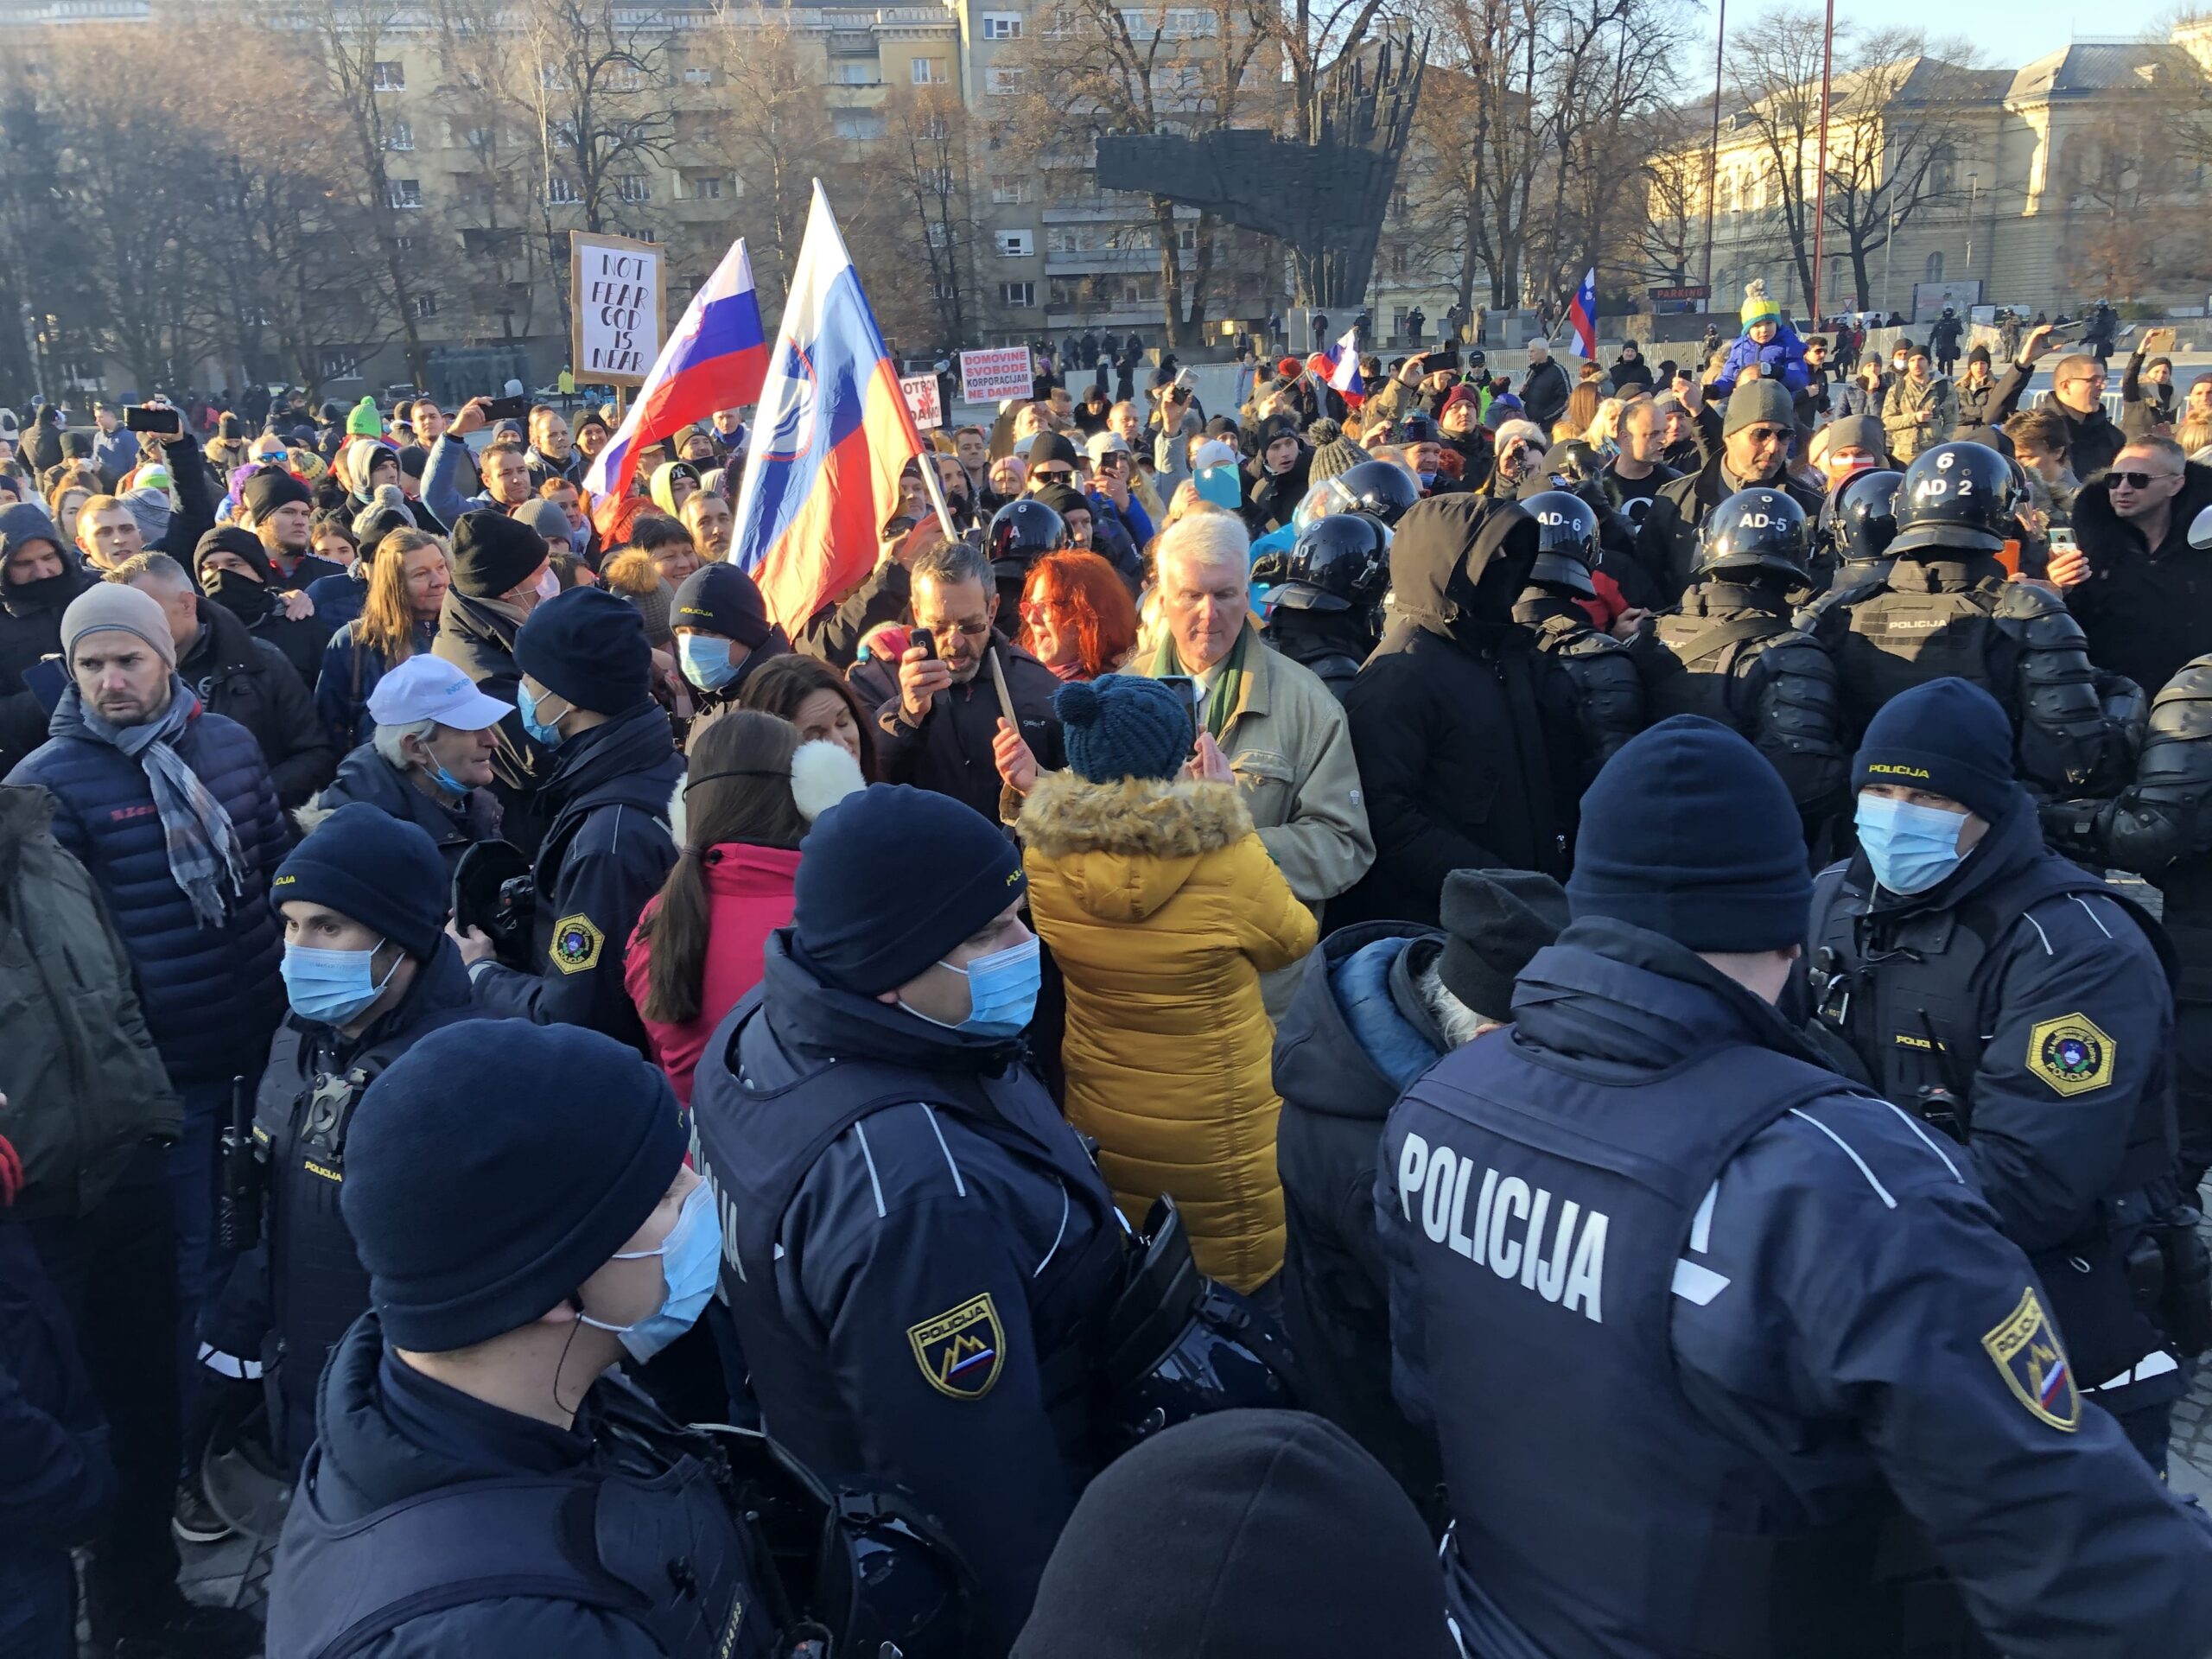 (VIDEO) Današnji protest na Trgu republike v Ljubljani večkrat na meji fizičnega spopada – Policisti so očitno večkrat spremenili taktiko in se nazadnje odločili za posamično popisovanje udeležencev